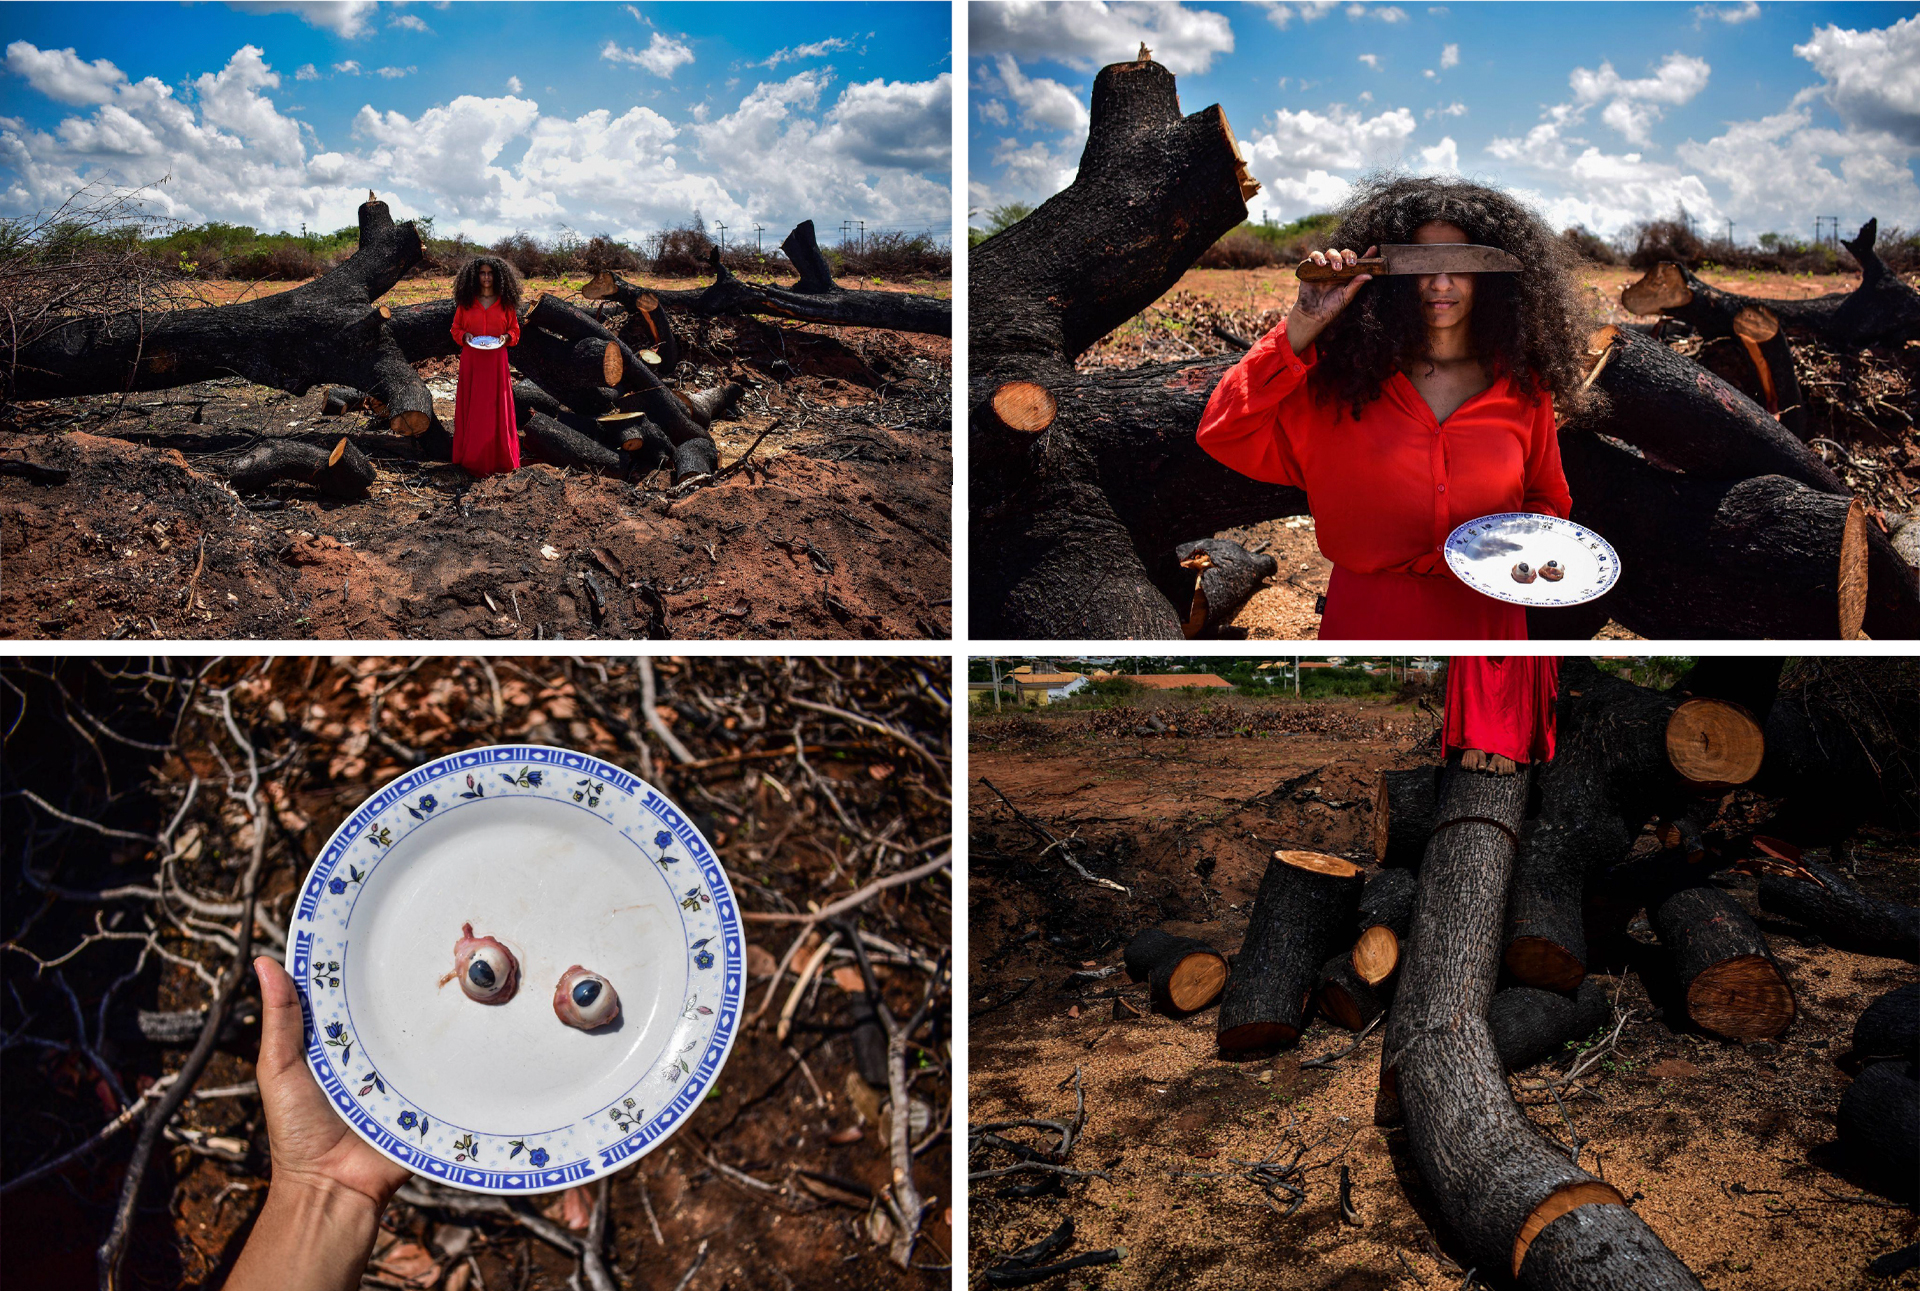 série de fotografias da artista cearense Maria Macêdo, posando na caatinga com facão, vestido vermelho e olhos de cabra